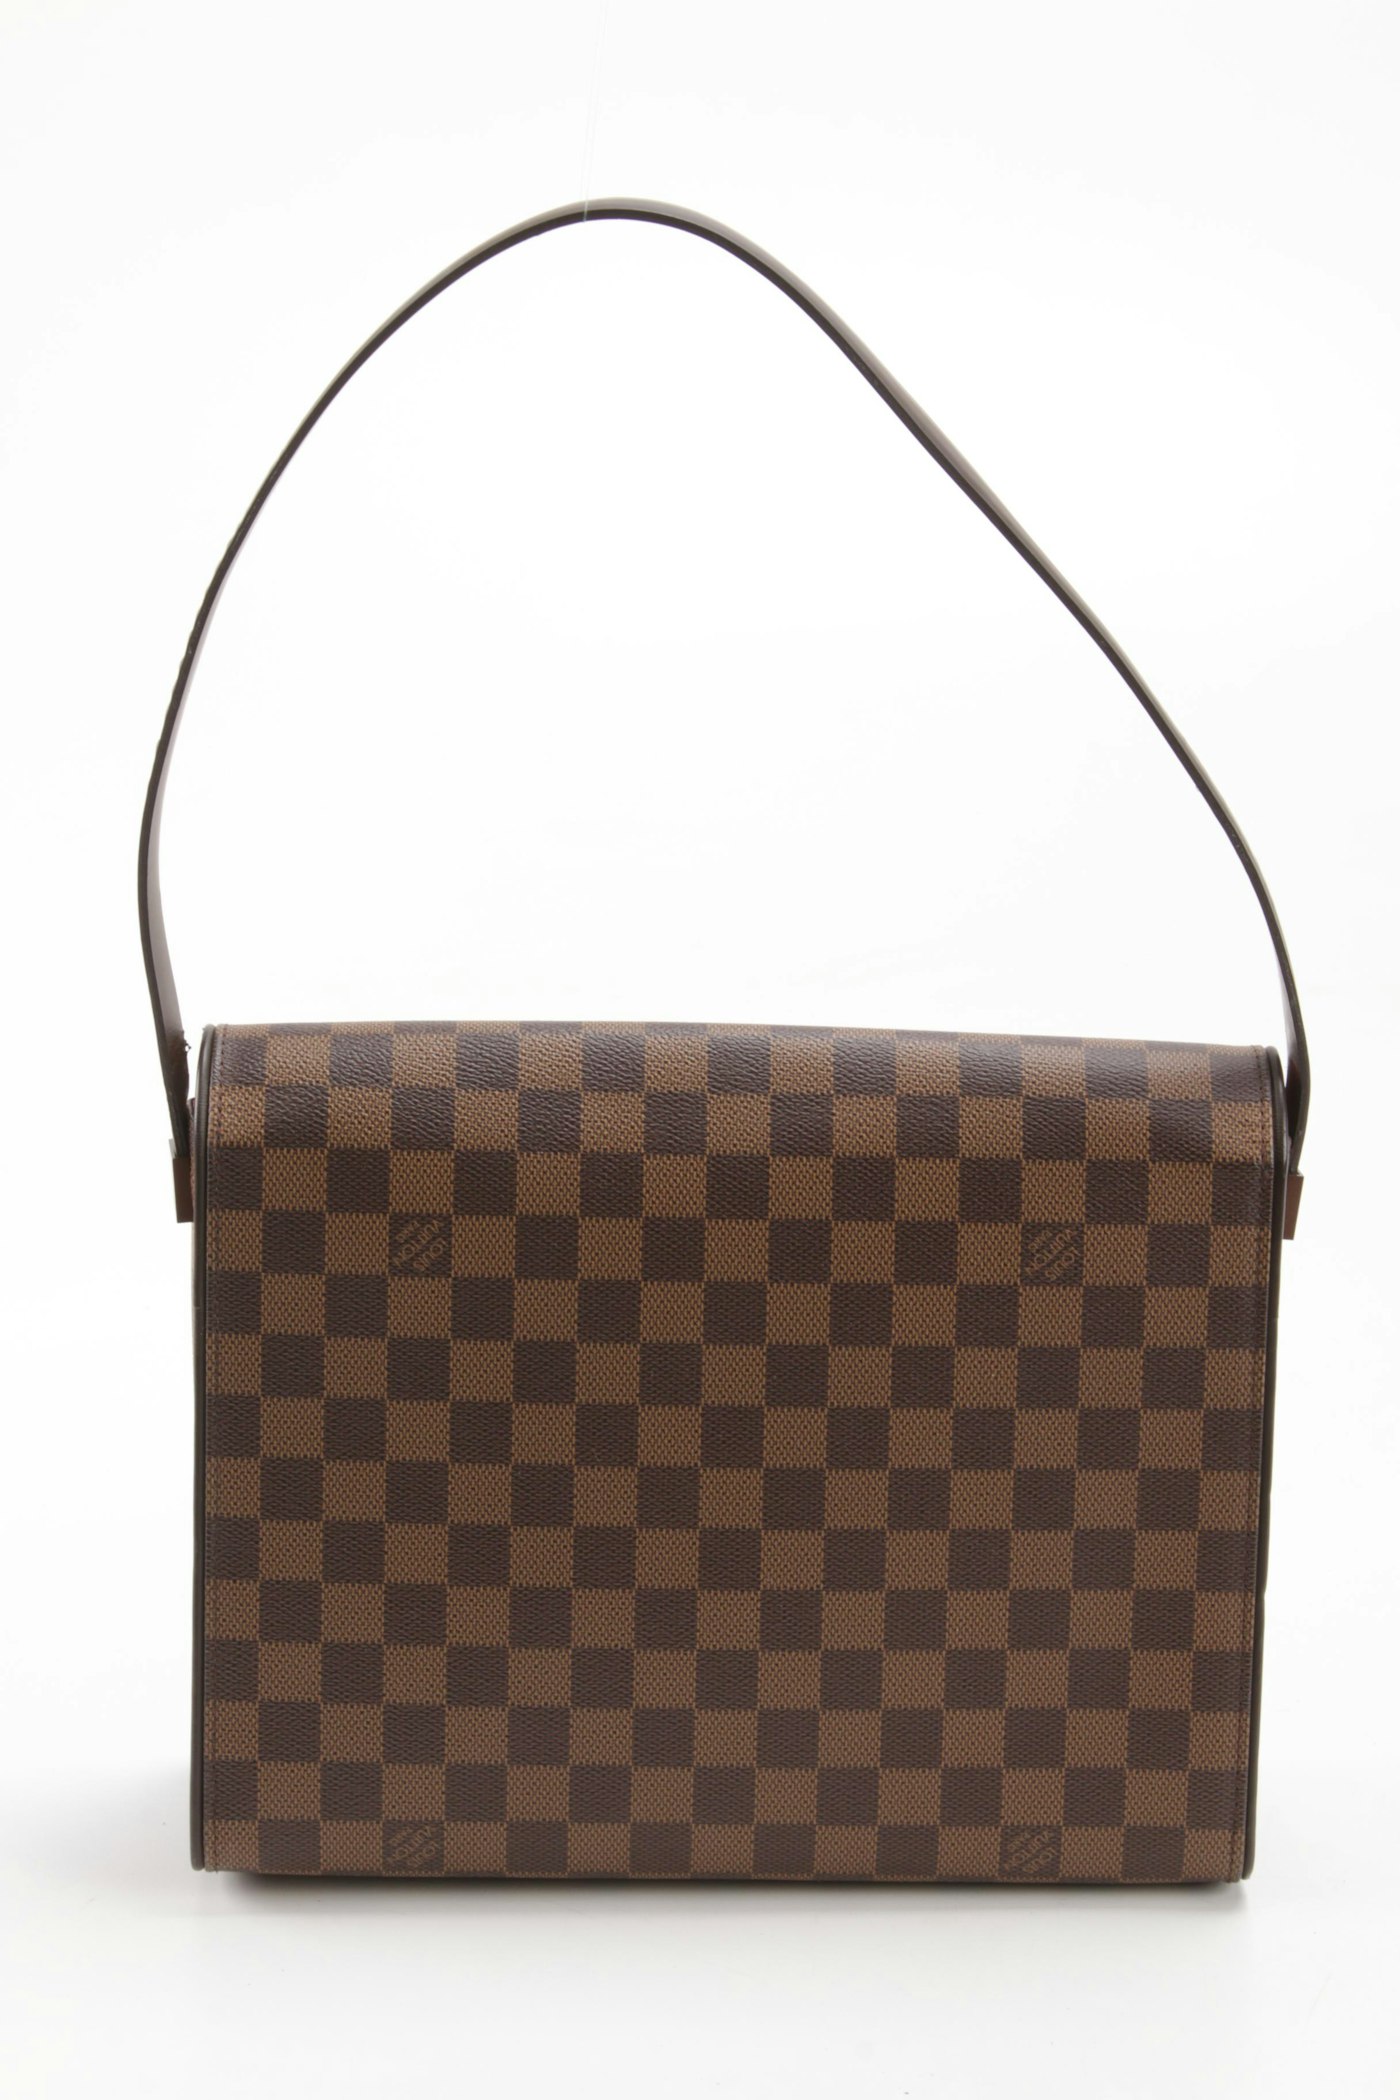 Louis Vuitton Tribeca Long Shoulder Bag in Damier Ebene Coated Canvas